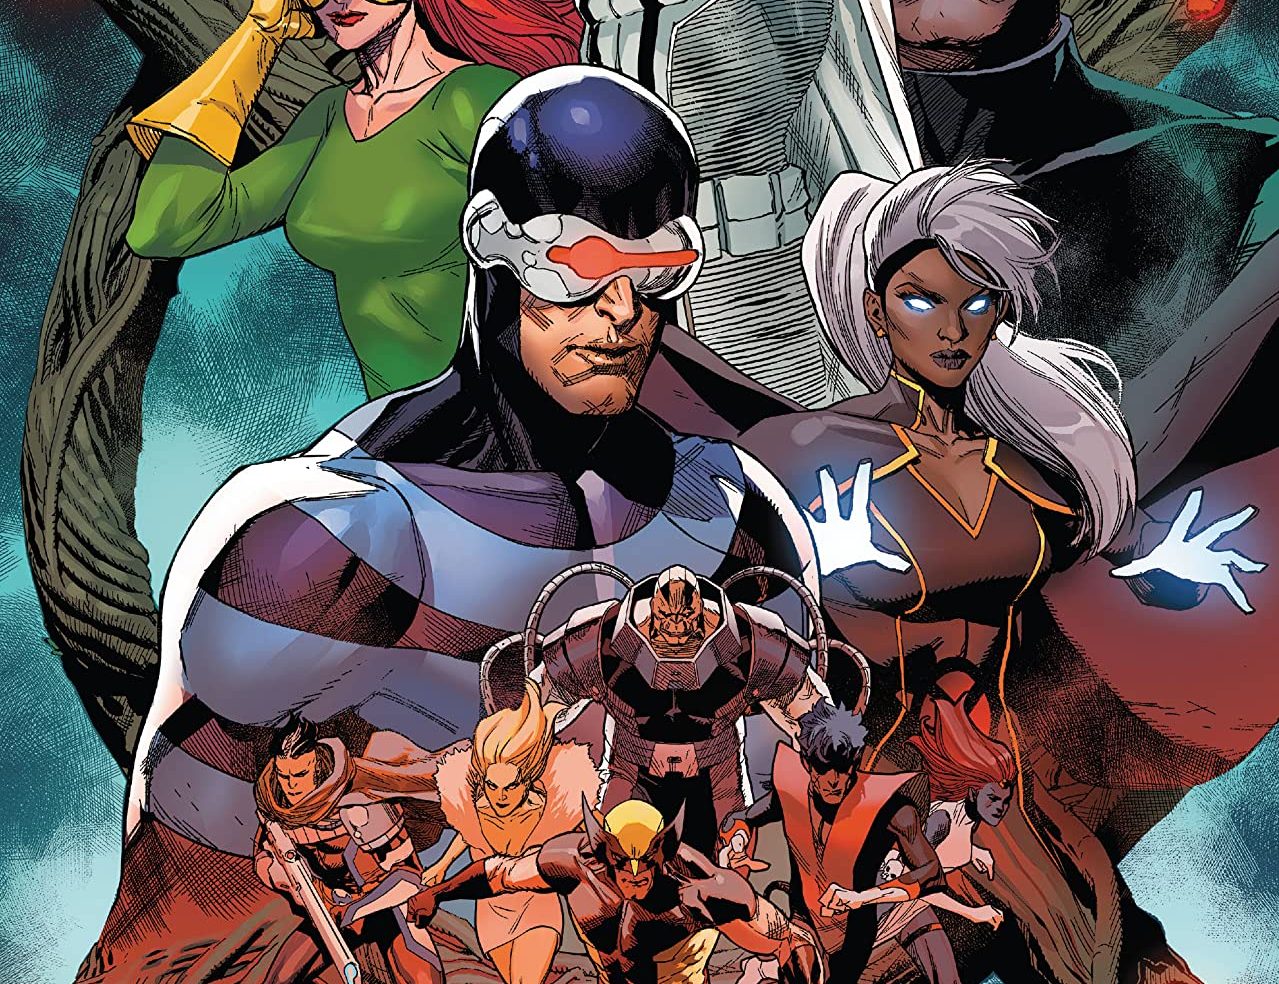 'X-Men' #21 introduces the new superheroes of Krakoa